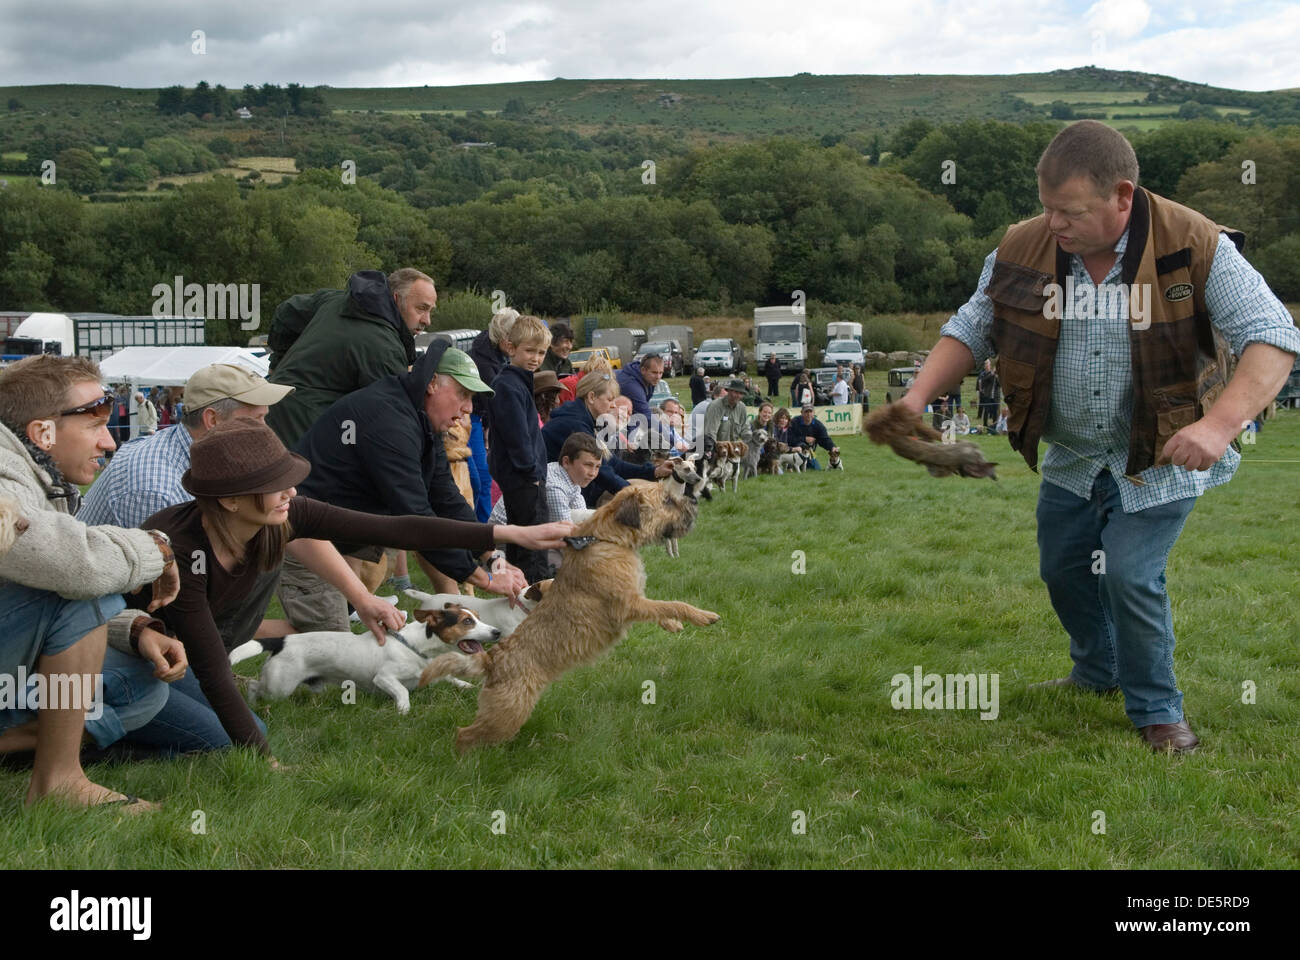 Terrier che corre alla fiera Widecombe, proprietari e loro terrier, l'uomo in piedi ha un "falso" coniglio in mano e scherza, eccitando i cani a dare la caccia. Widecombe nel Moor Dartmoor Devon Regno Unito. HOMER SYKES Foto Stock